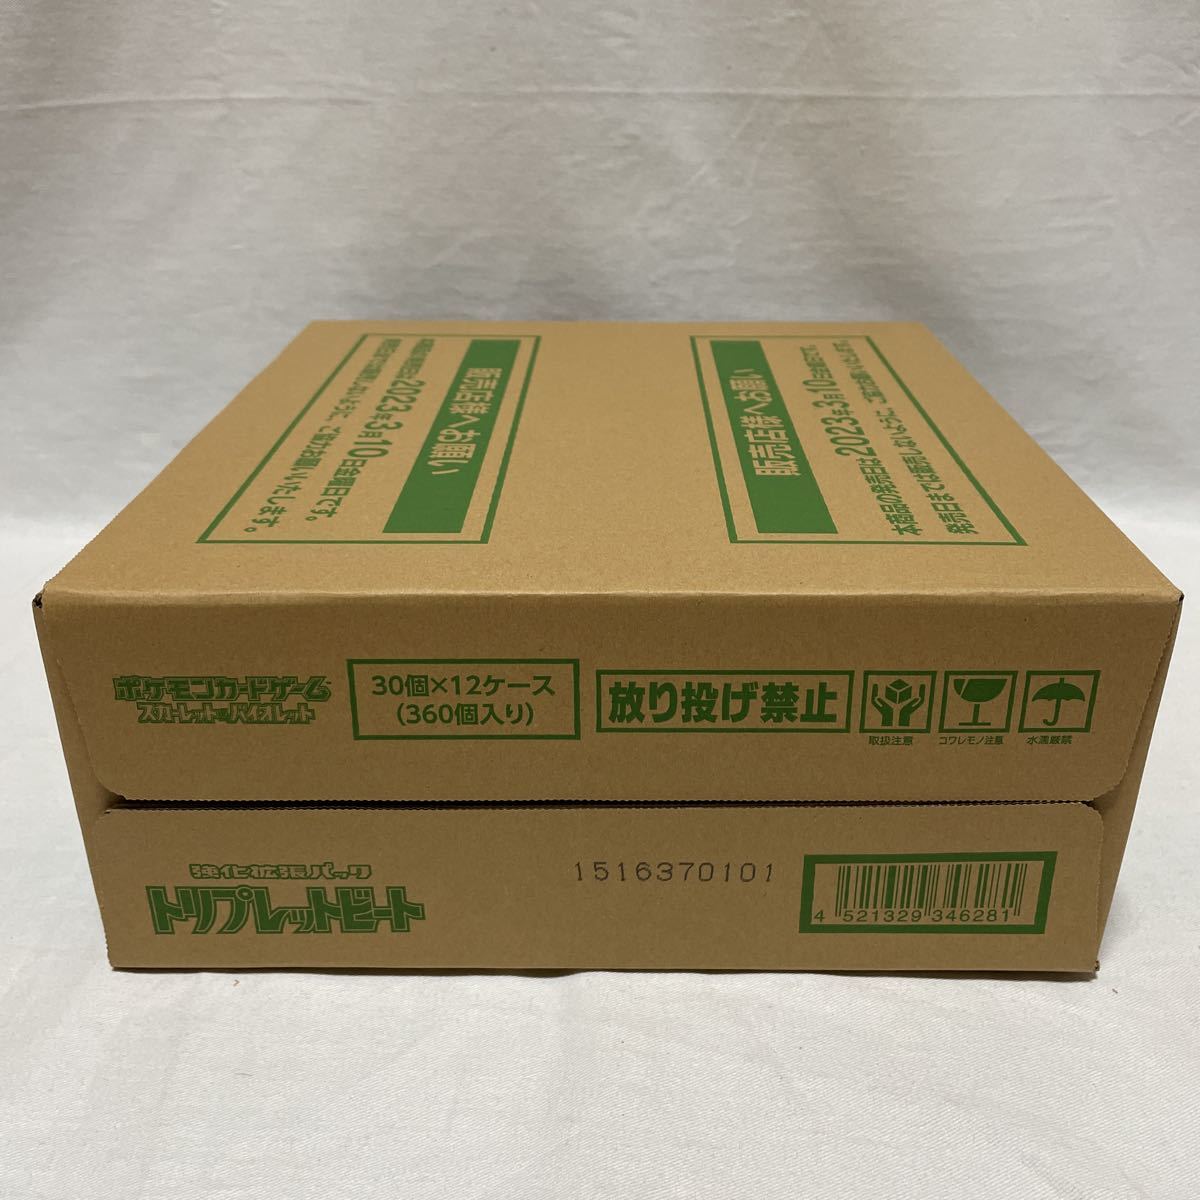 sv1a トリプレットビート 1カートン 12BOX(箱)